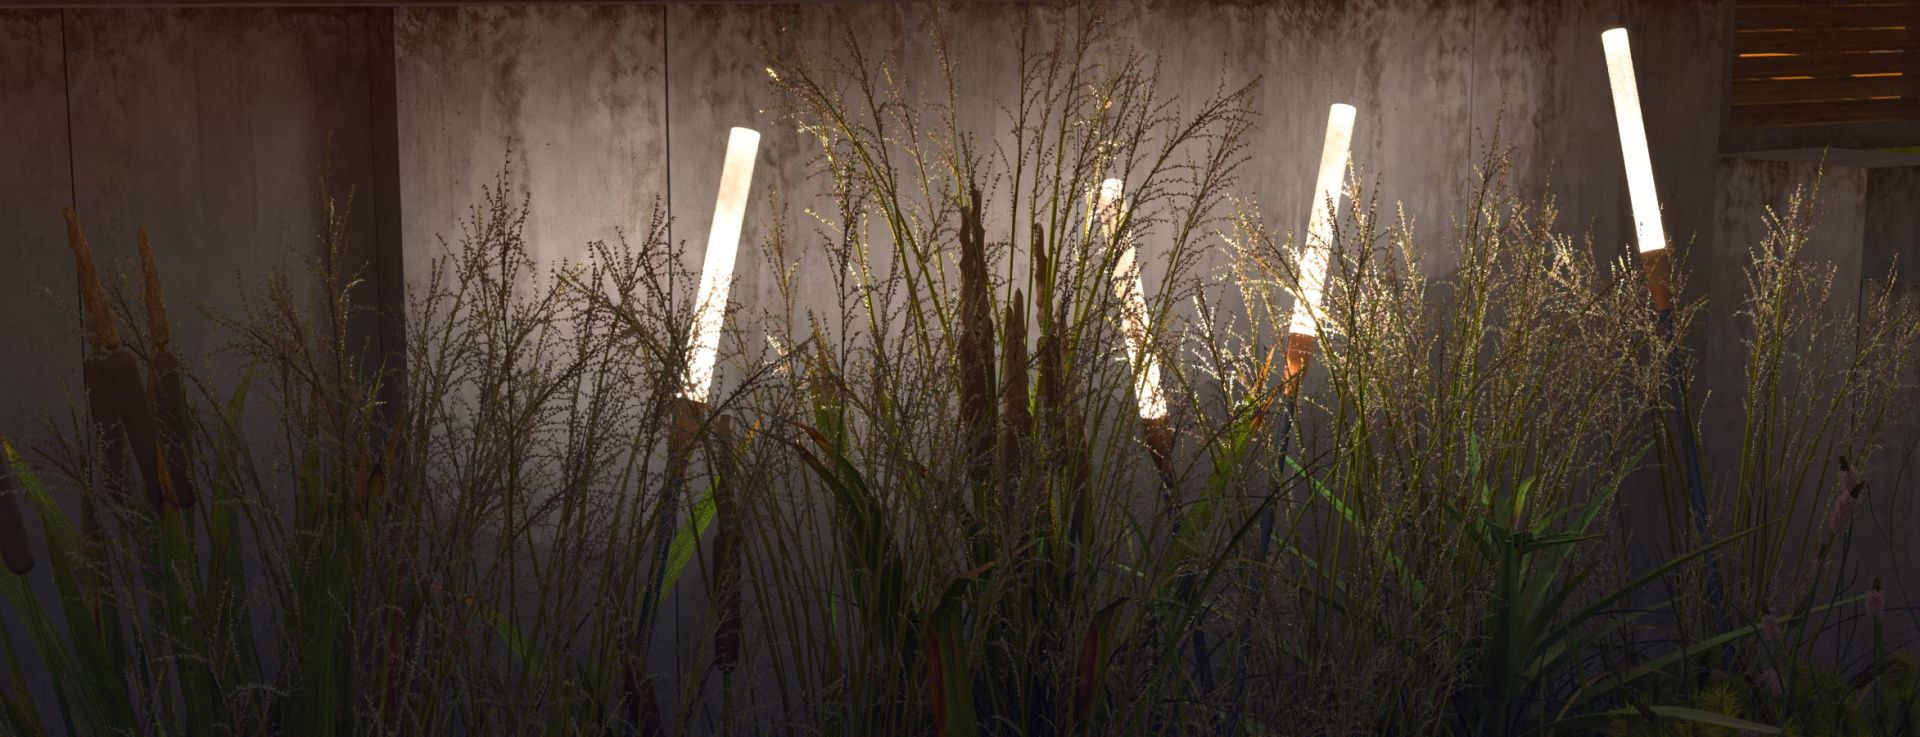 Купить садово-парковый LED светильник Reeds, от производителя - Купить грунтовые светодиодные светильники RADUGA.